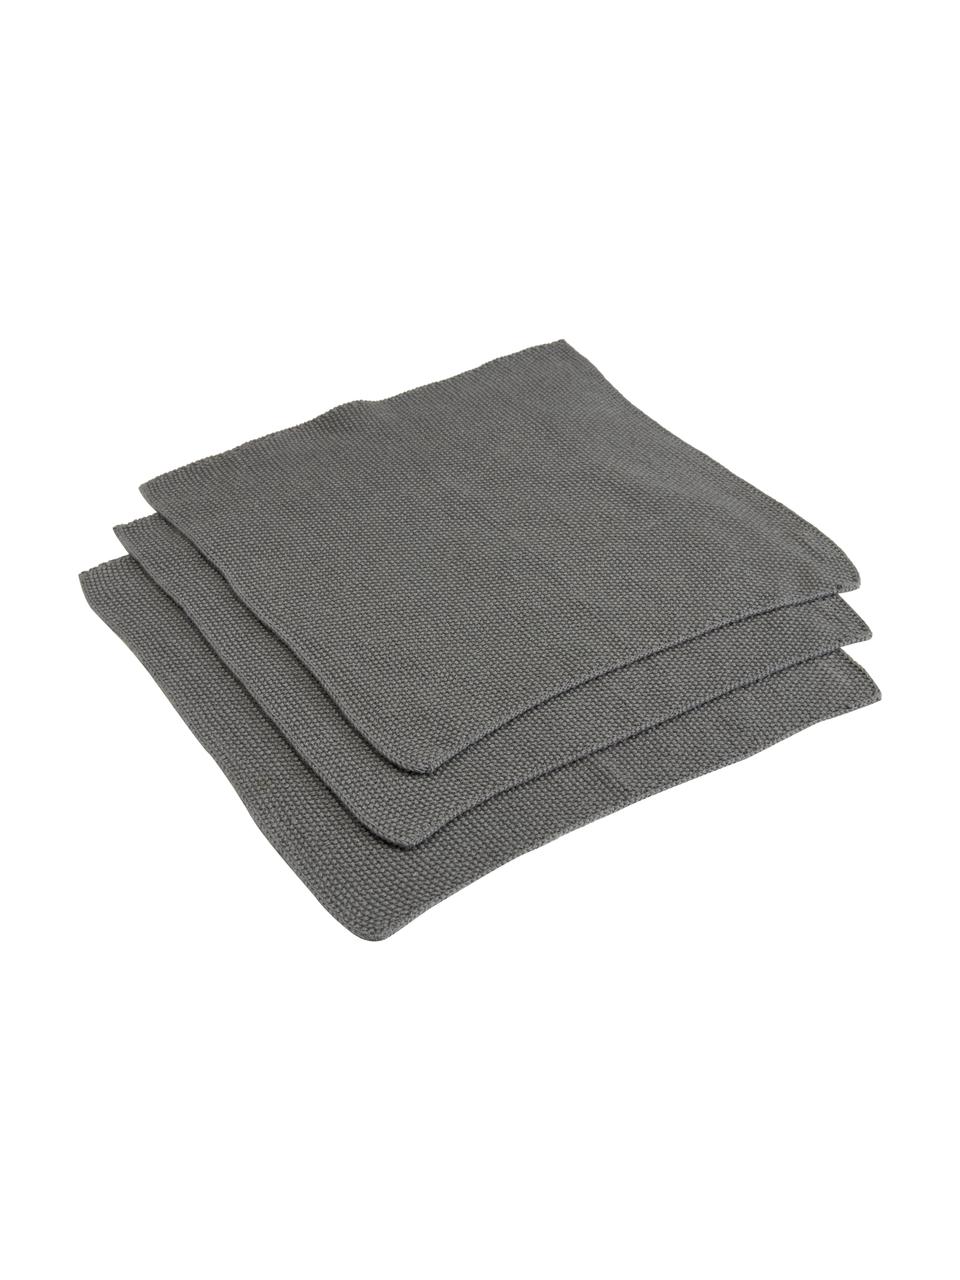 Ściereczka z bawełny Soft, 3 szt., 100% bawełna, Szary, S 29 x D 30 cm